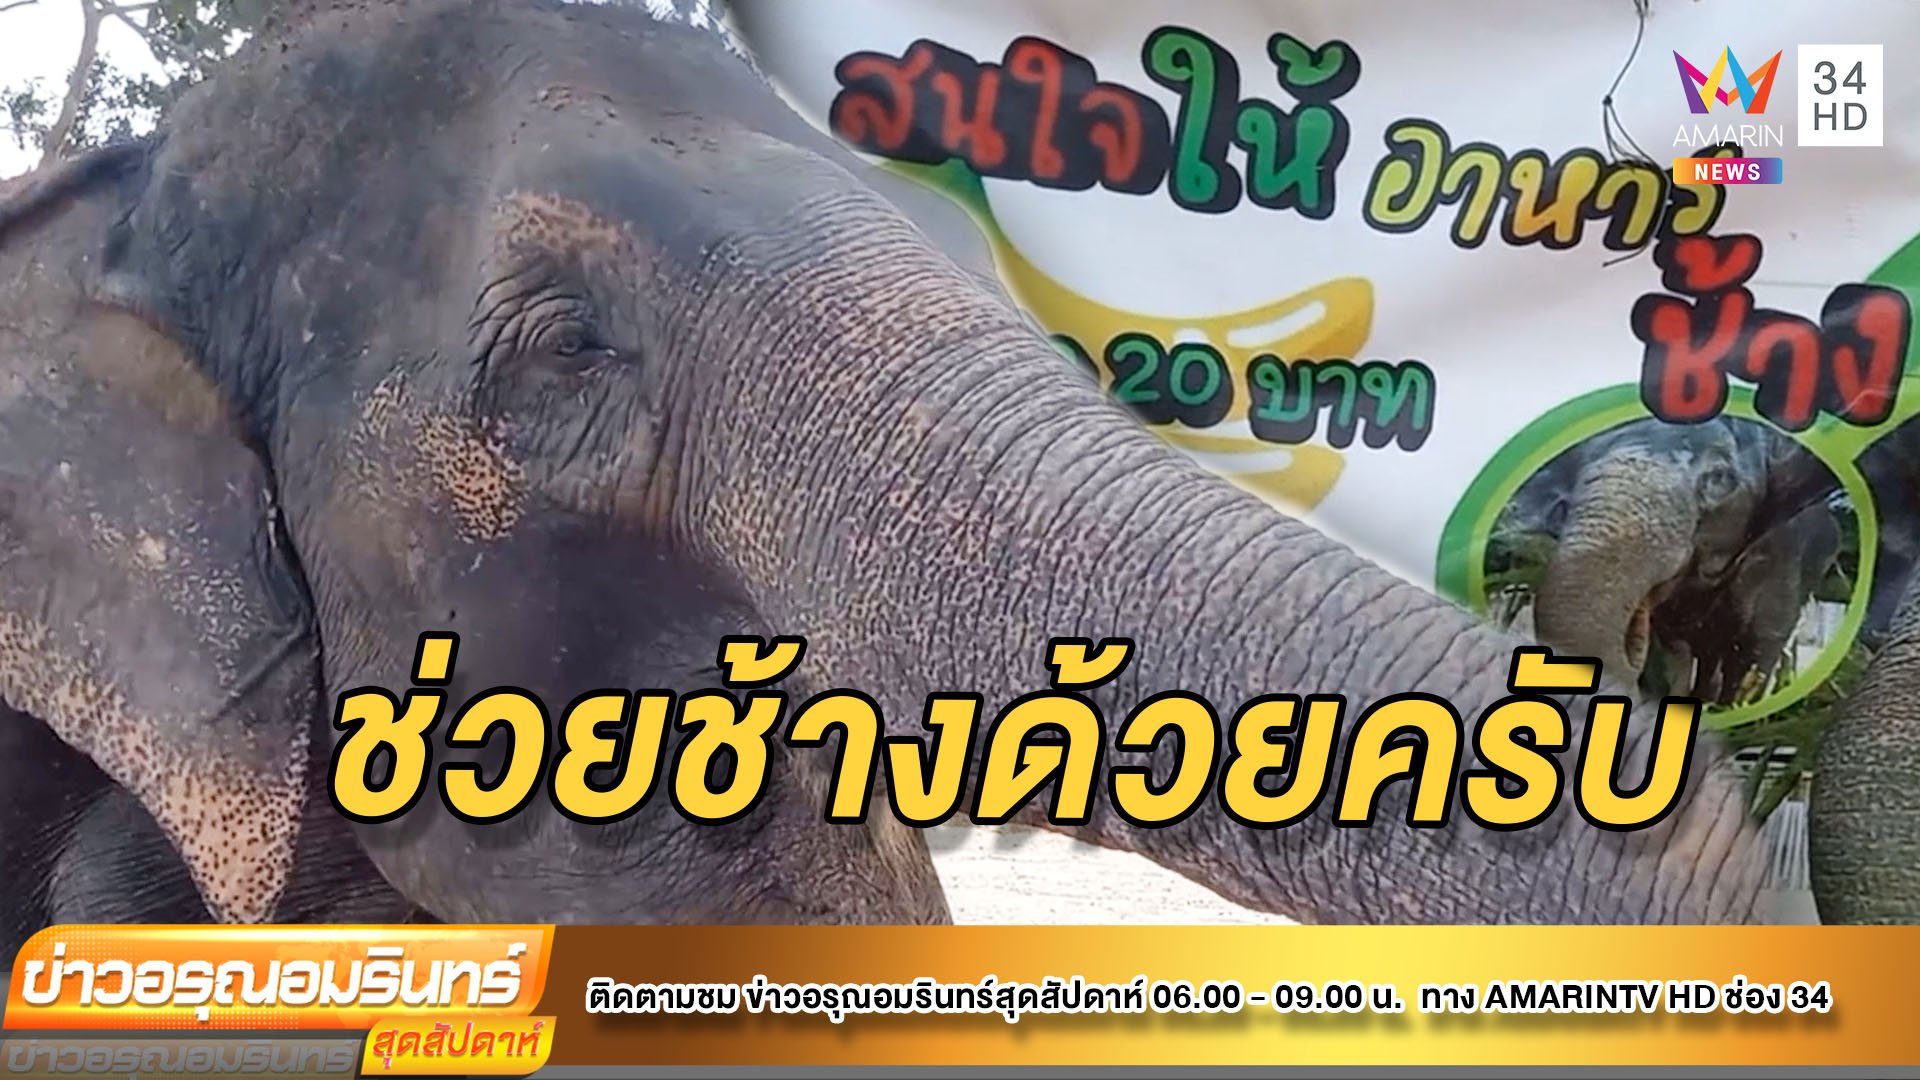 พิษโควิด-19 ทำช้างตกงาน ควาญพาขายอาหารข้างทางสู้ชีวิต  | ข่าวอรุณอมรินทร์ | 20 มิ.ย. 64 | AMARIN TVHD34